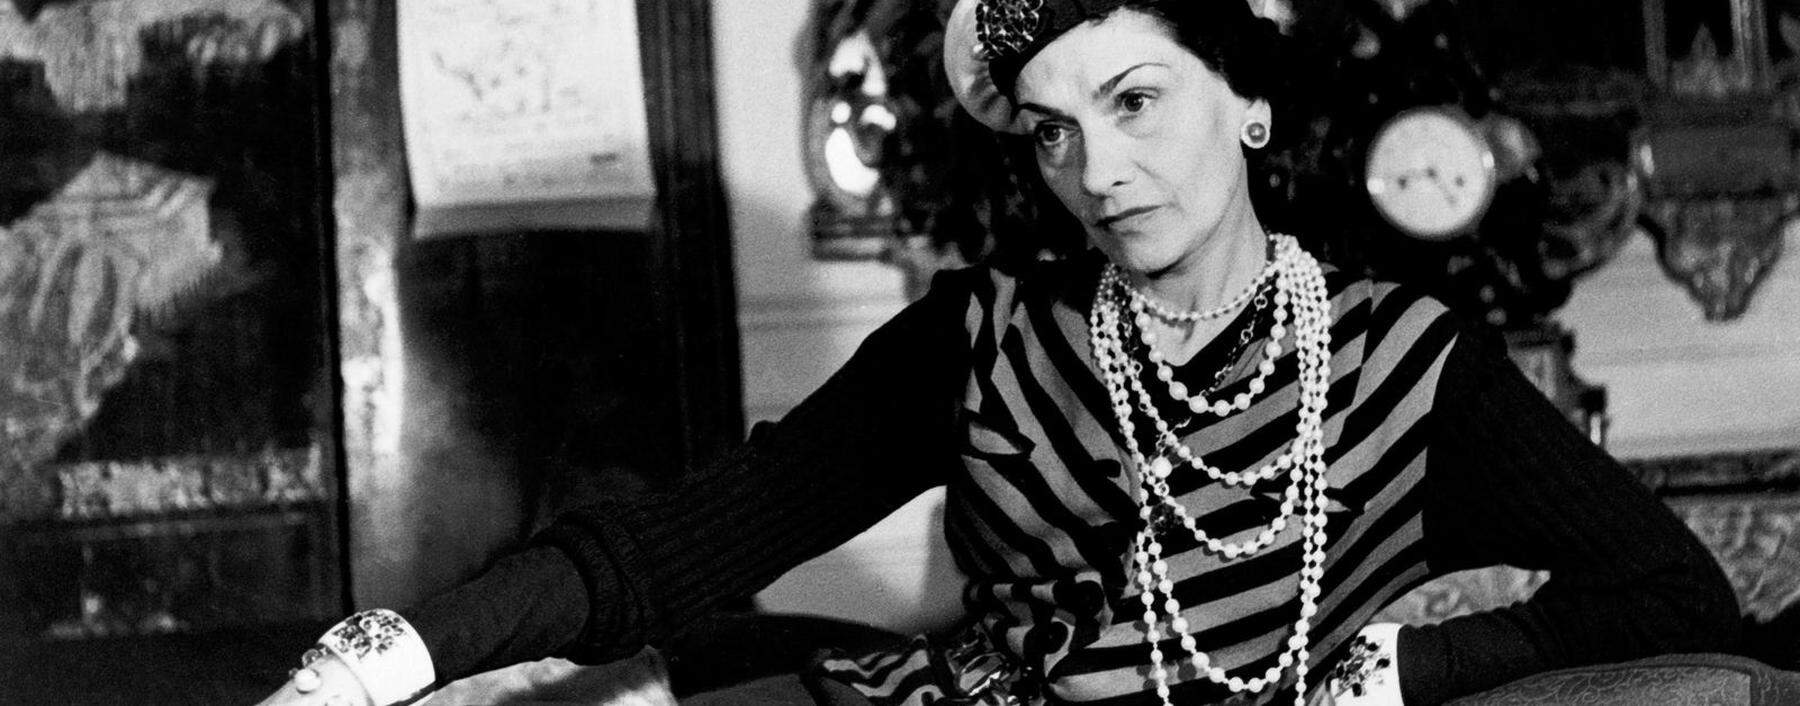 Coco Chanel war in den 1930ern der Mittelpunkt einer hedonistischen Parallelwelt an der Côte d'Azur. Bis der Krieg kam.